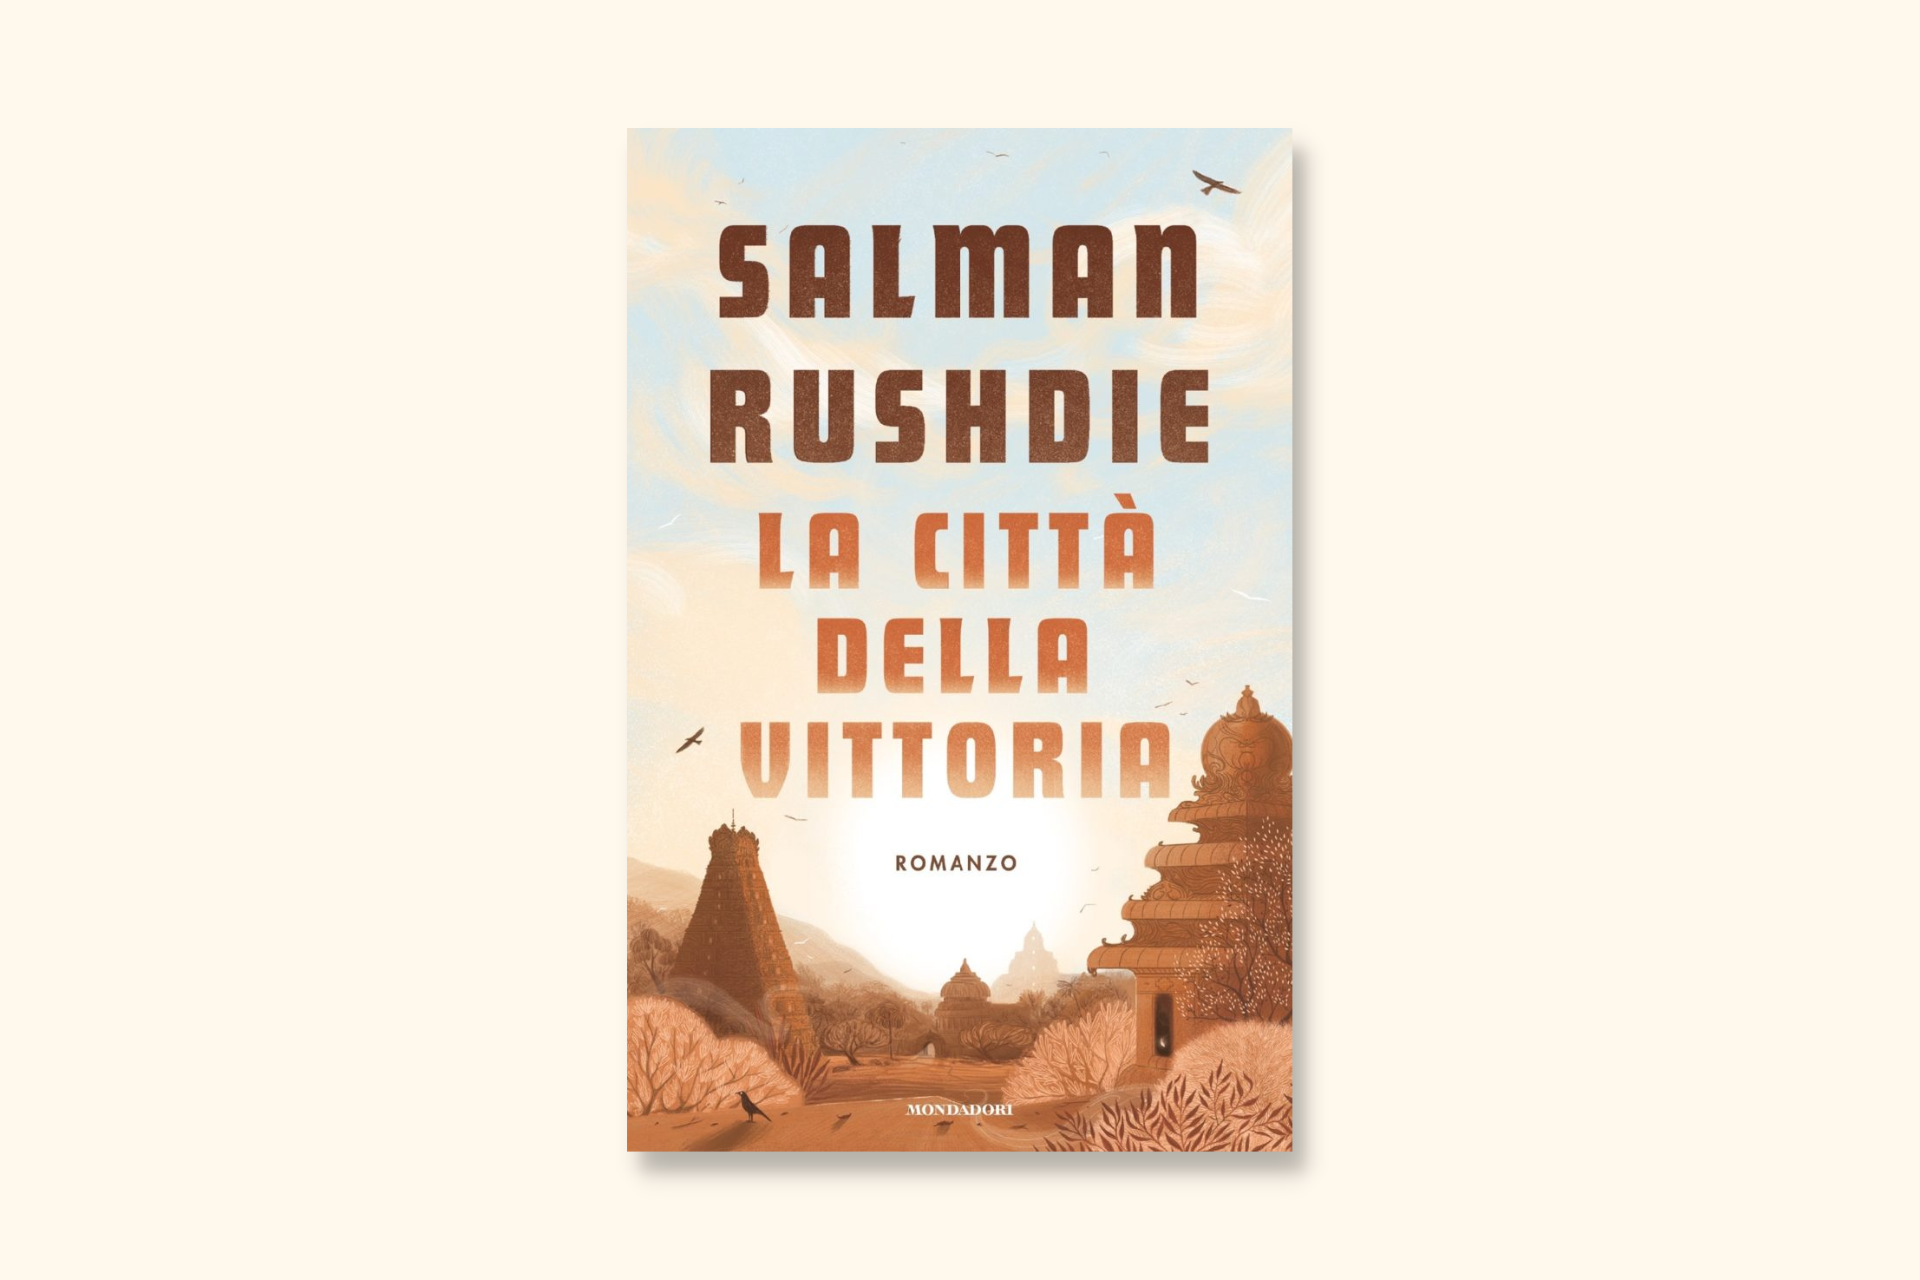 Salman Rushdie La città della vittoria Mondadori